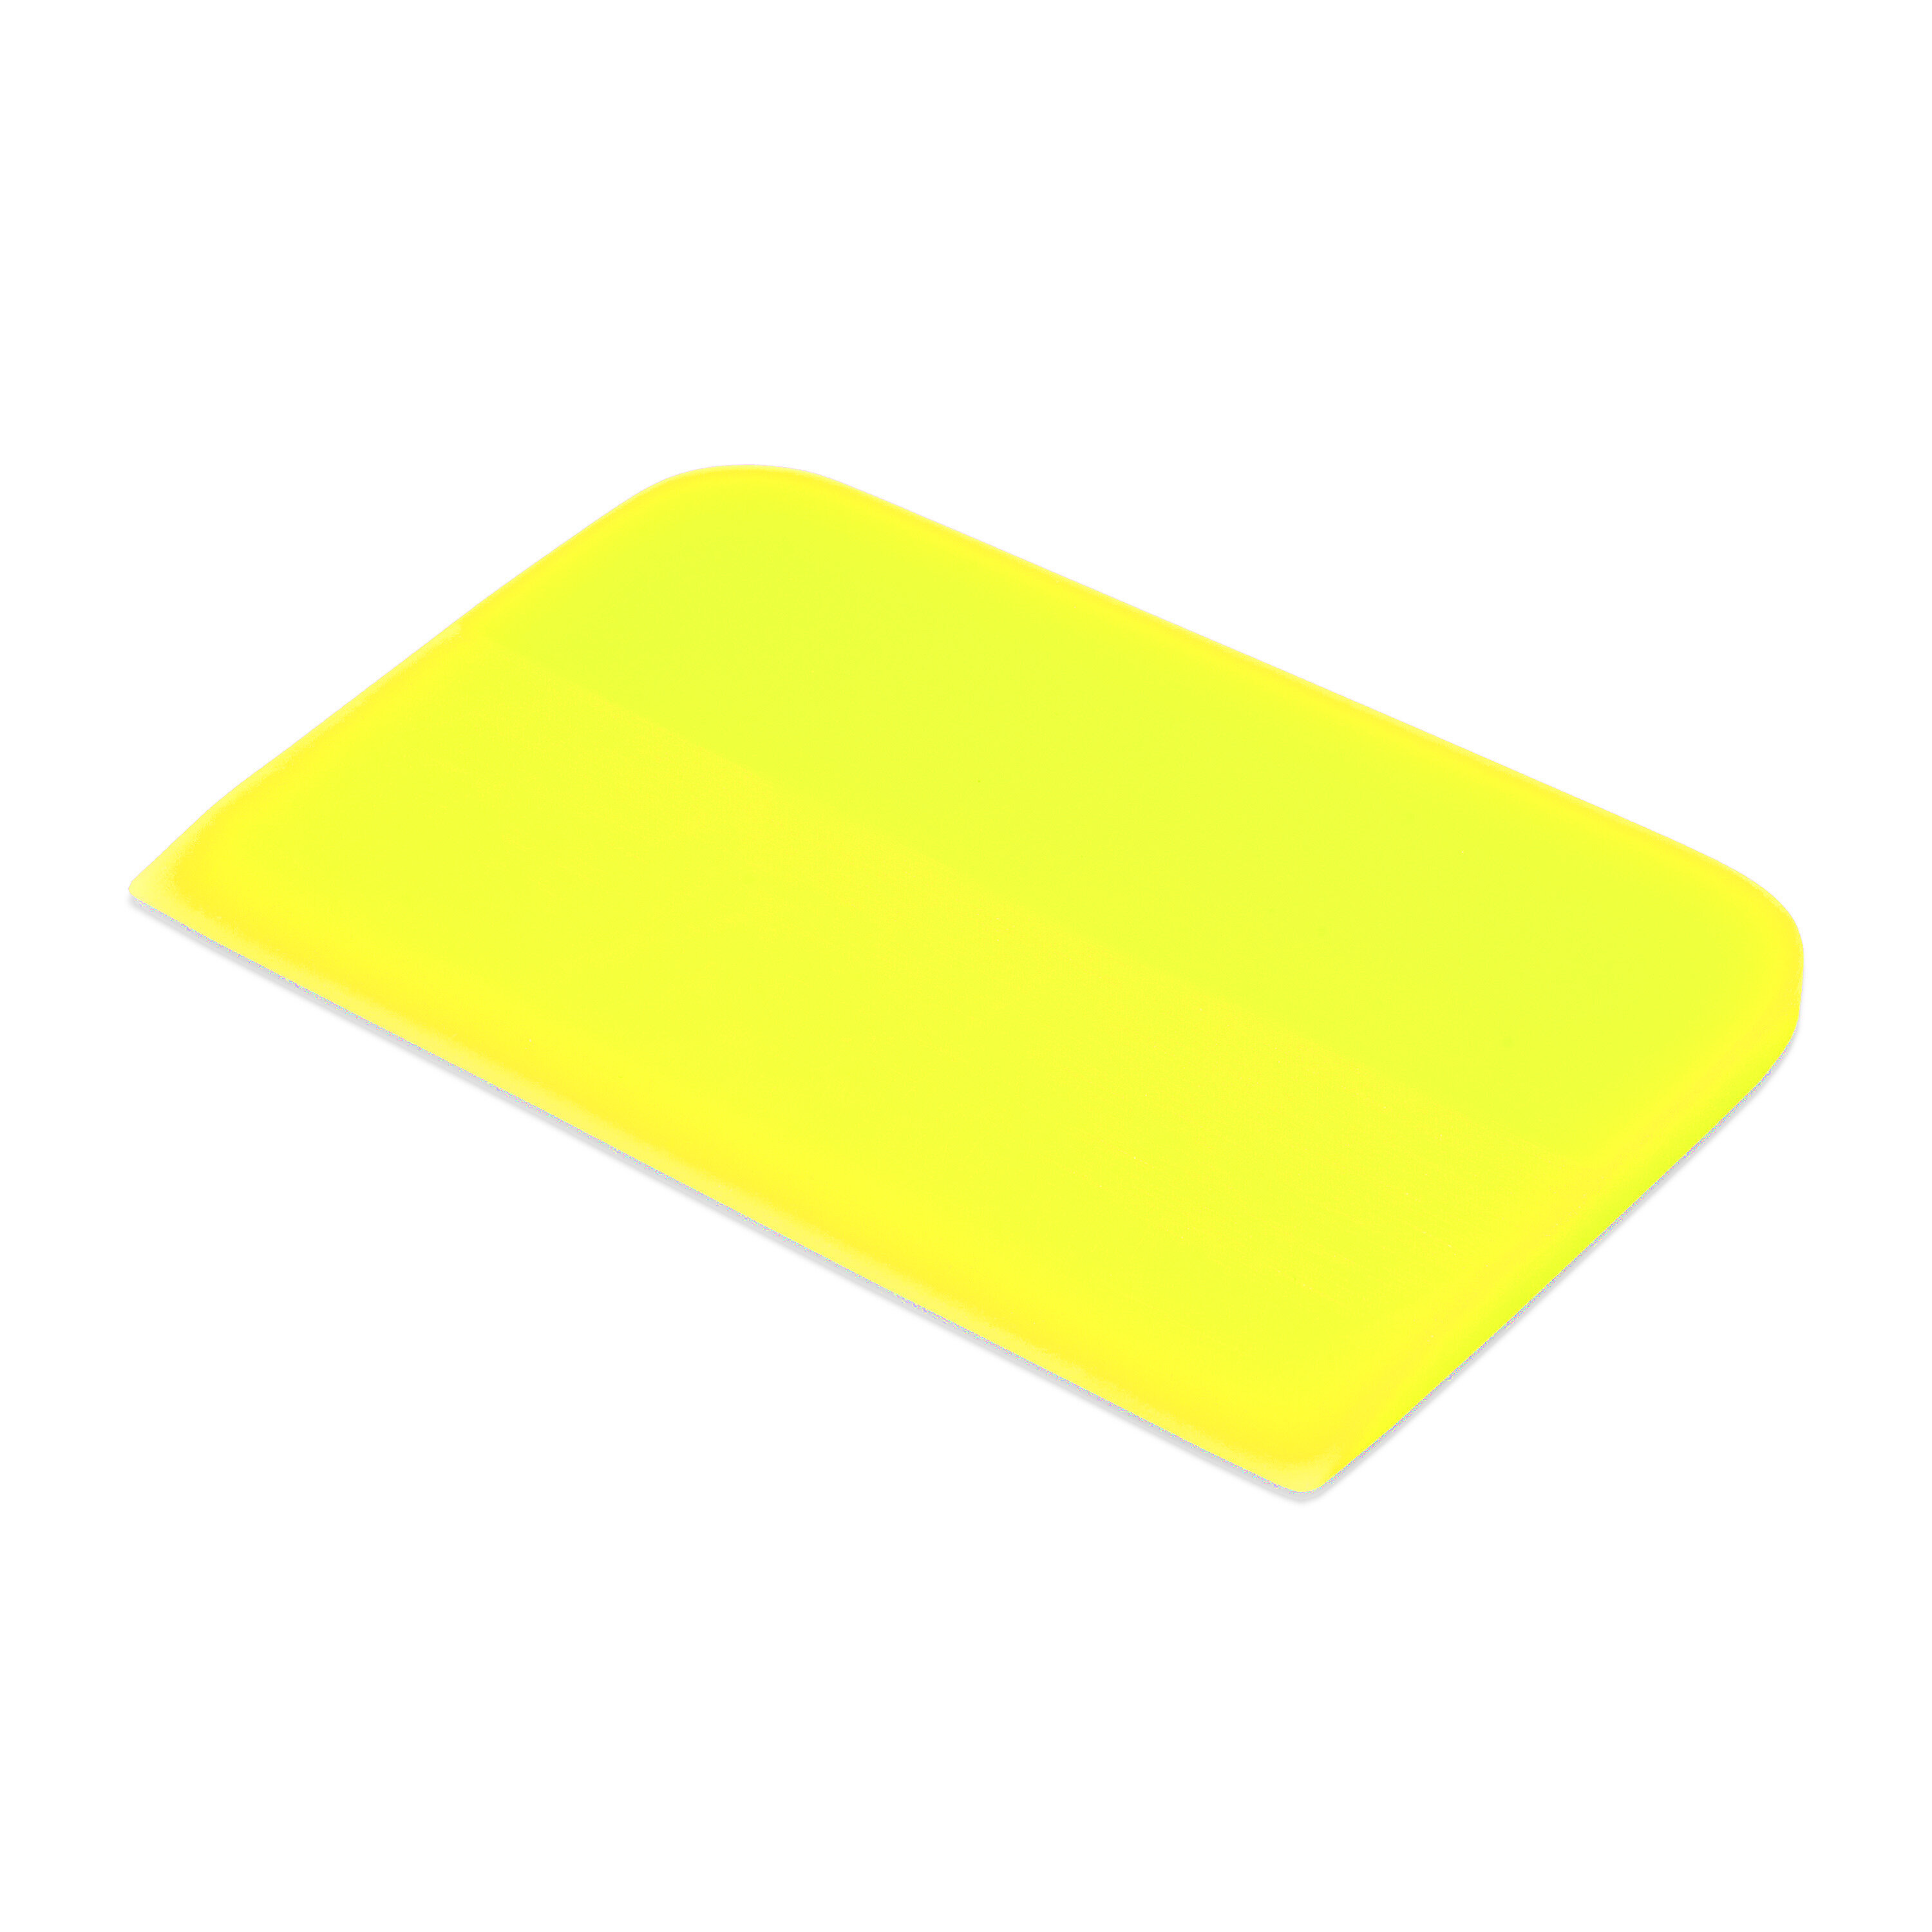 Выгонка полиуретановая желтая Juicy Slider 06x12x75 см